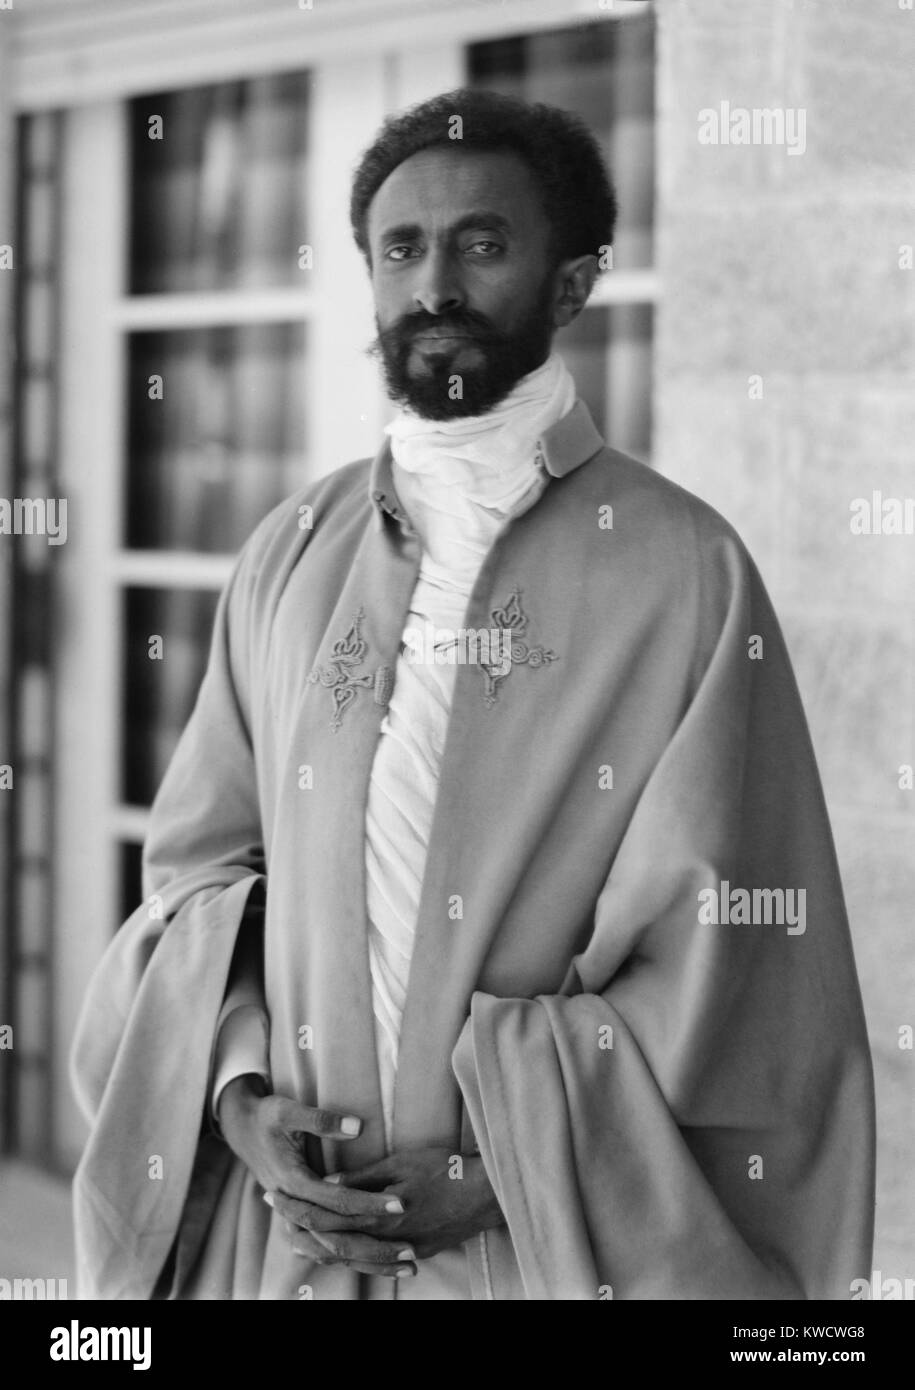 Ras Tafari, plus tard l'Empereur Hailé Sélassié d'Ethiopie. 1924 photo prise dans le cadre de son voyage au Moyen-Orient et en Europe. Tafari prend le nom de l'Empereur Hailé Sélassié en 1930, lorsqu'il a succédé à l'Impératrice Zewditu (BSLOC 2017 1 121) Banque D'Images